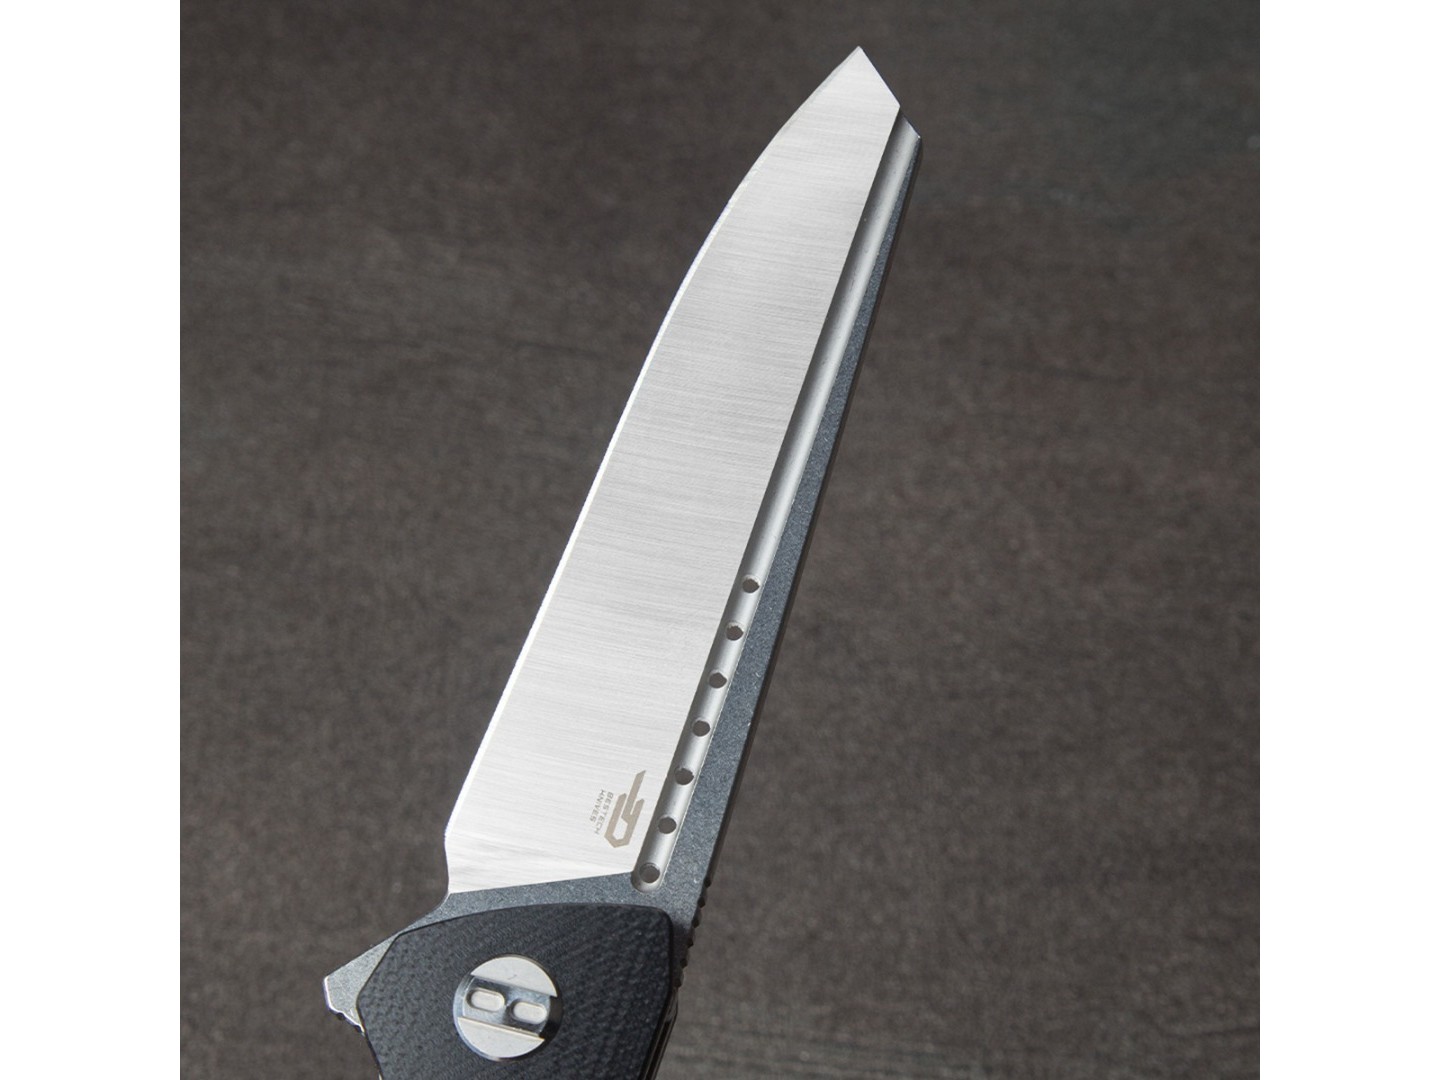 Нож Bestech Slyther BG51A-1 сталь 14C28N satin, рукоять G10 black